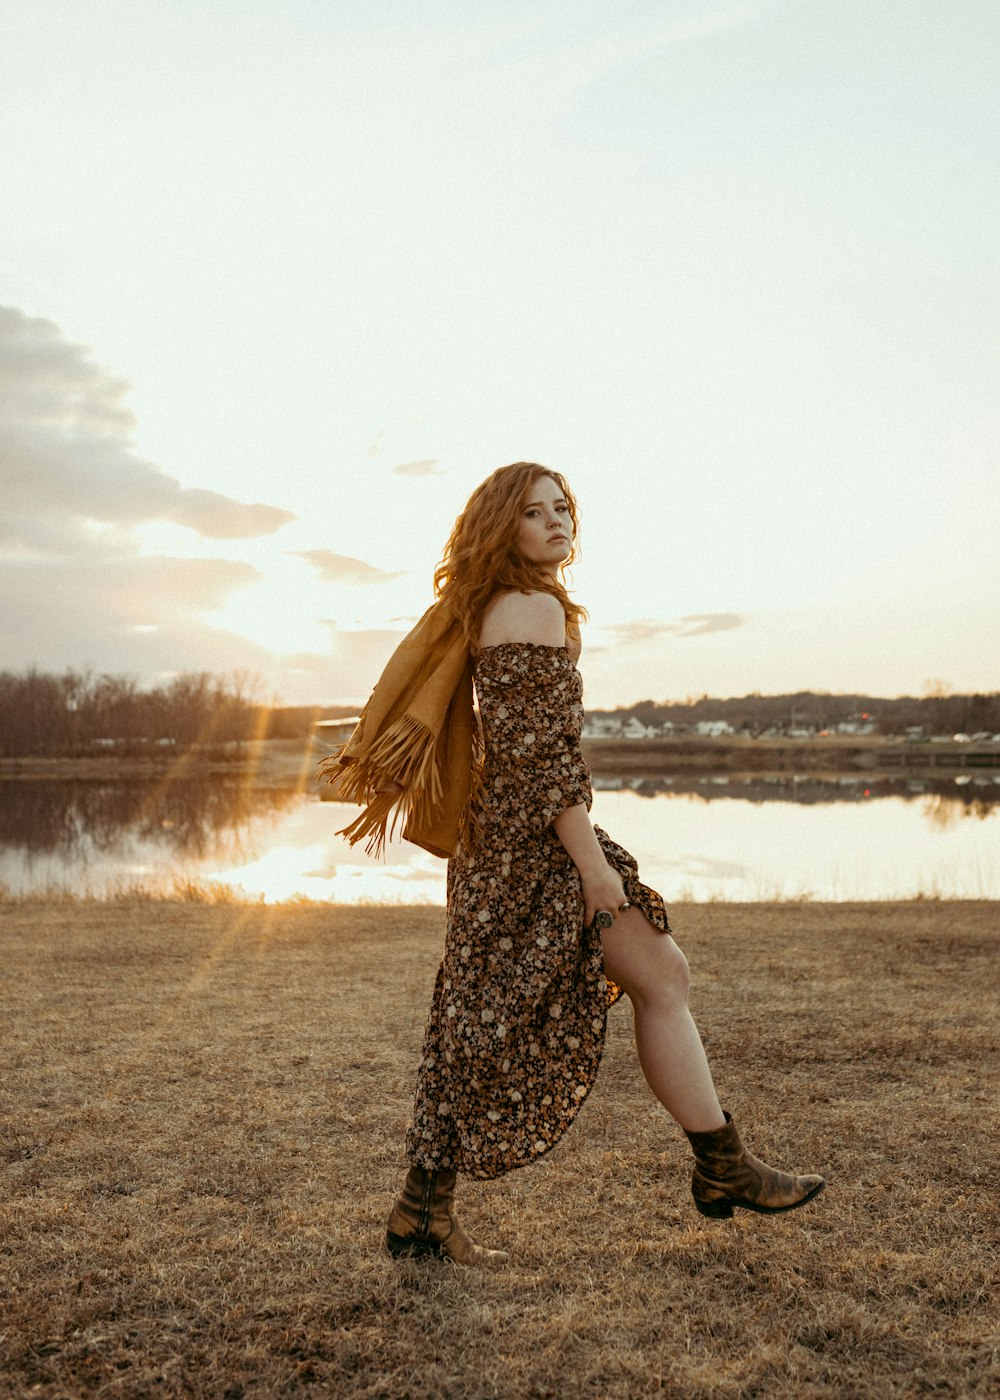 a woman in a dress is walking in a field